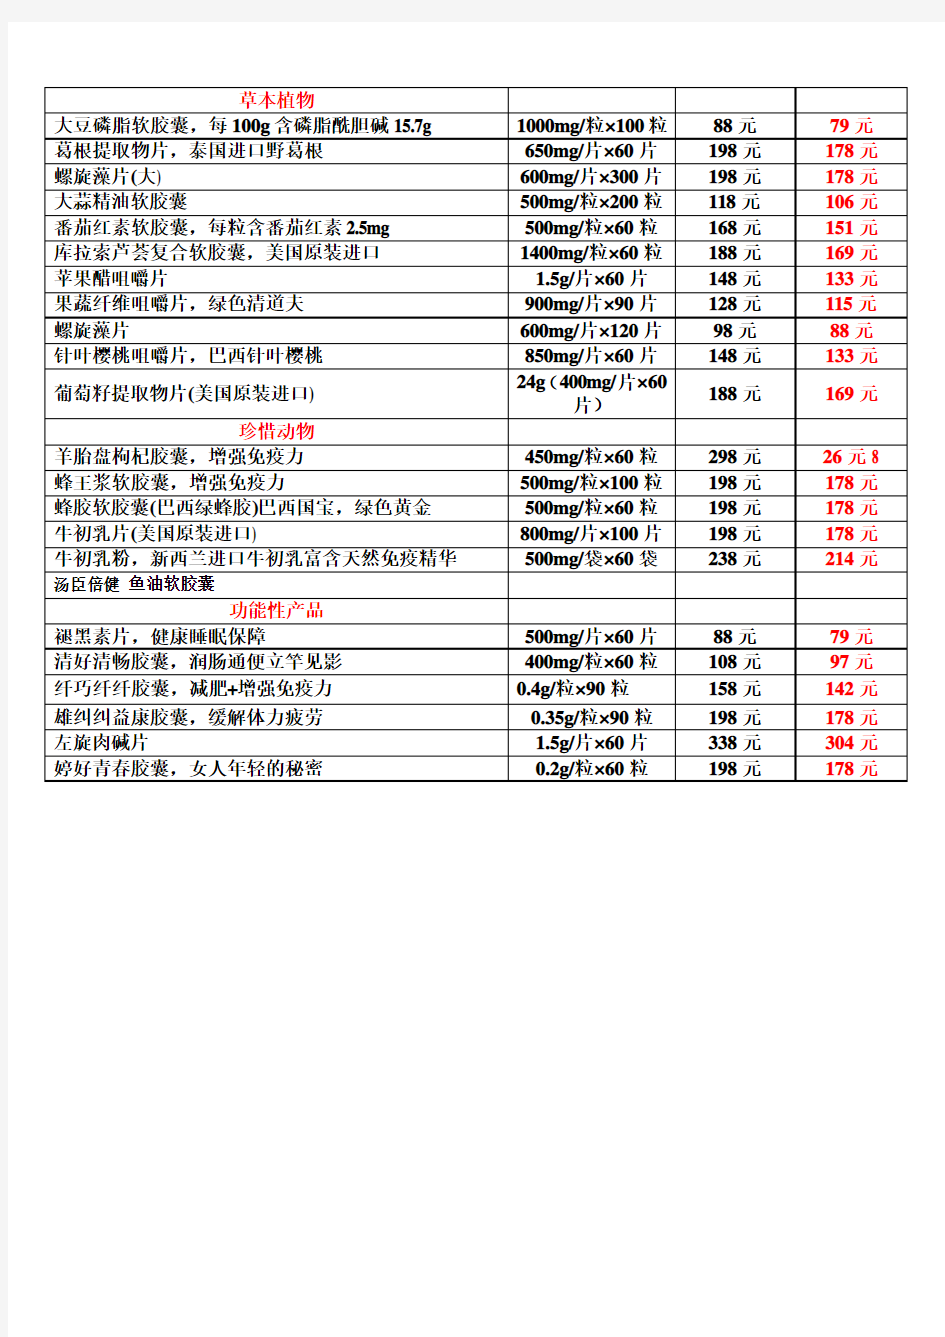 汤臣倍健产品最新价格表2012年5月